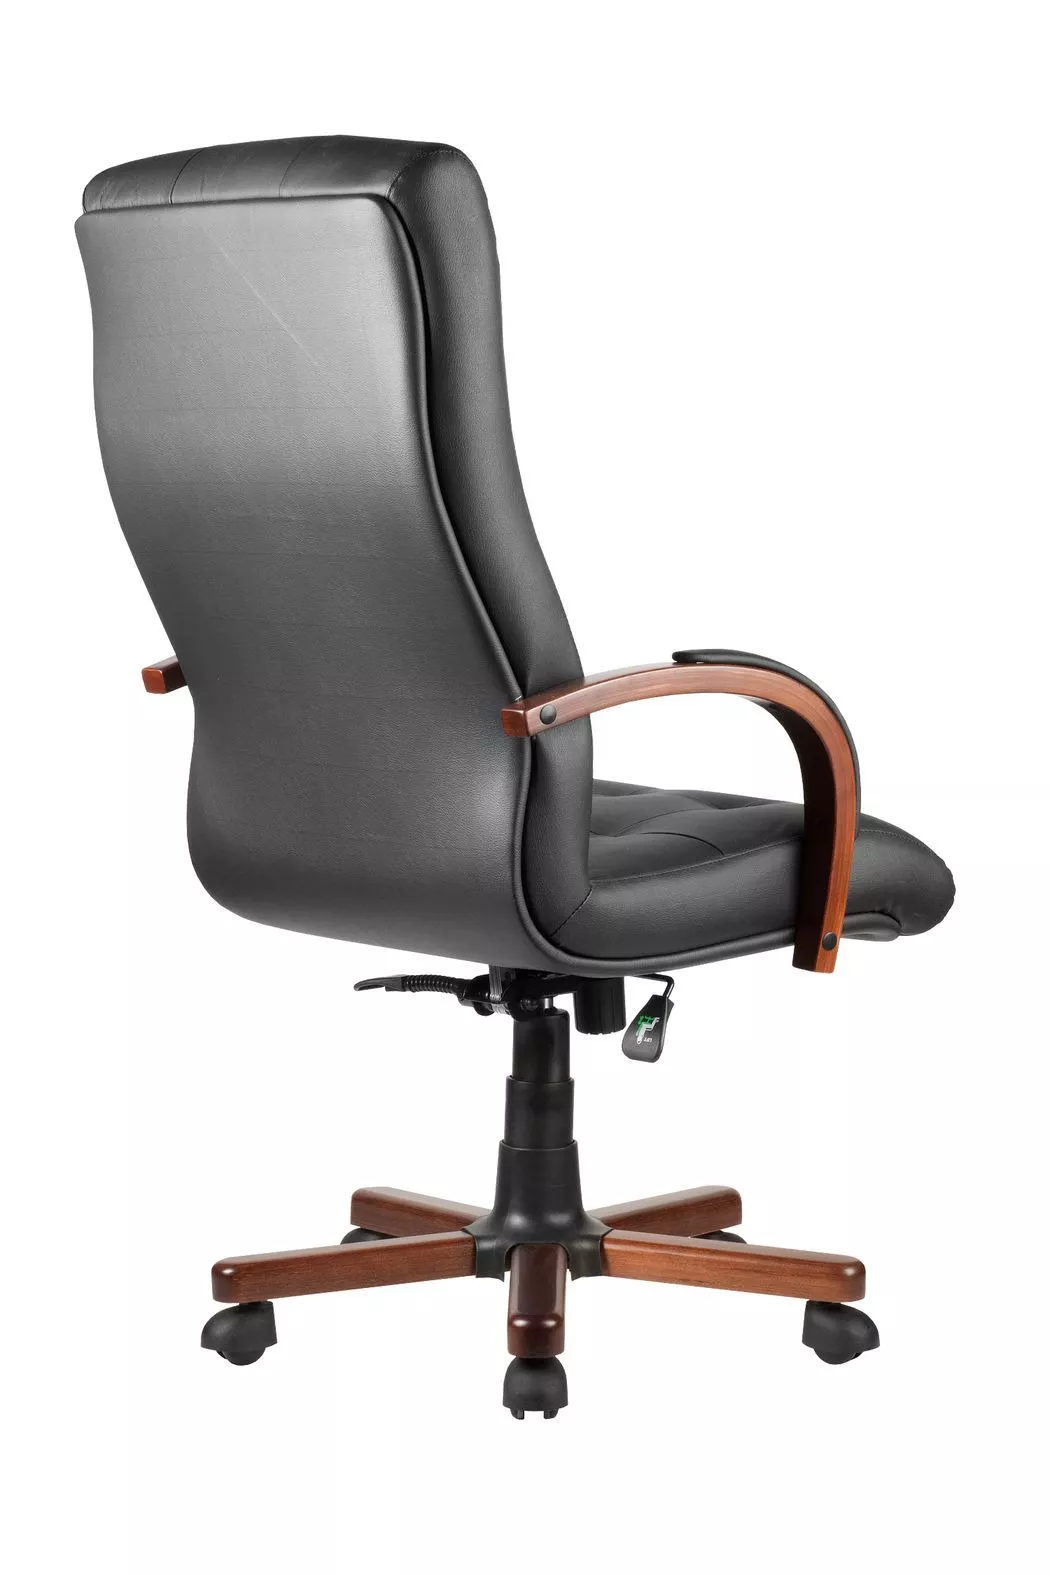 Кресло руководителя Riva Chair WOOD M 165 A черный